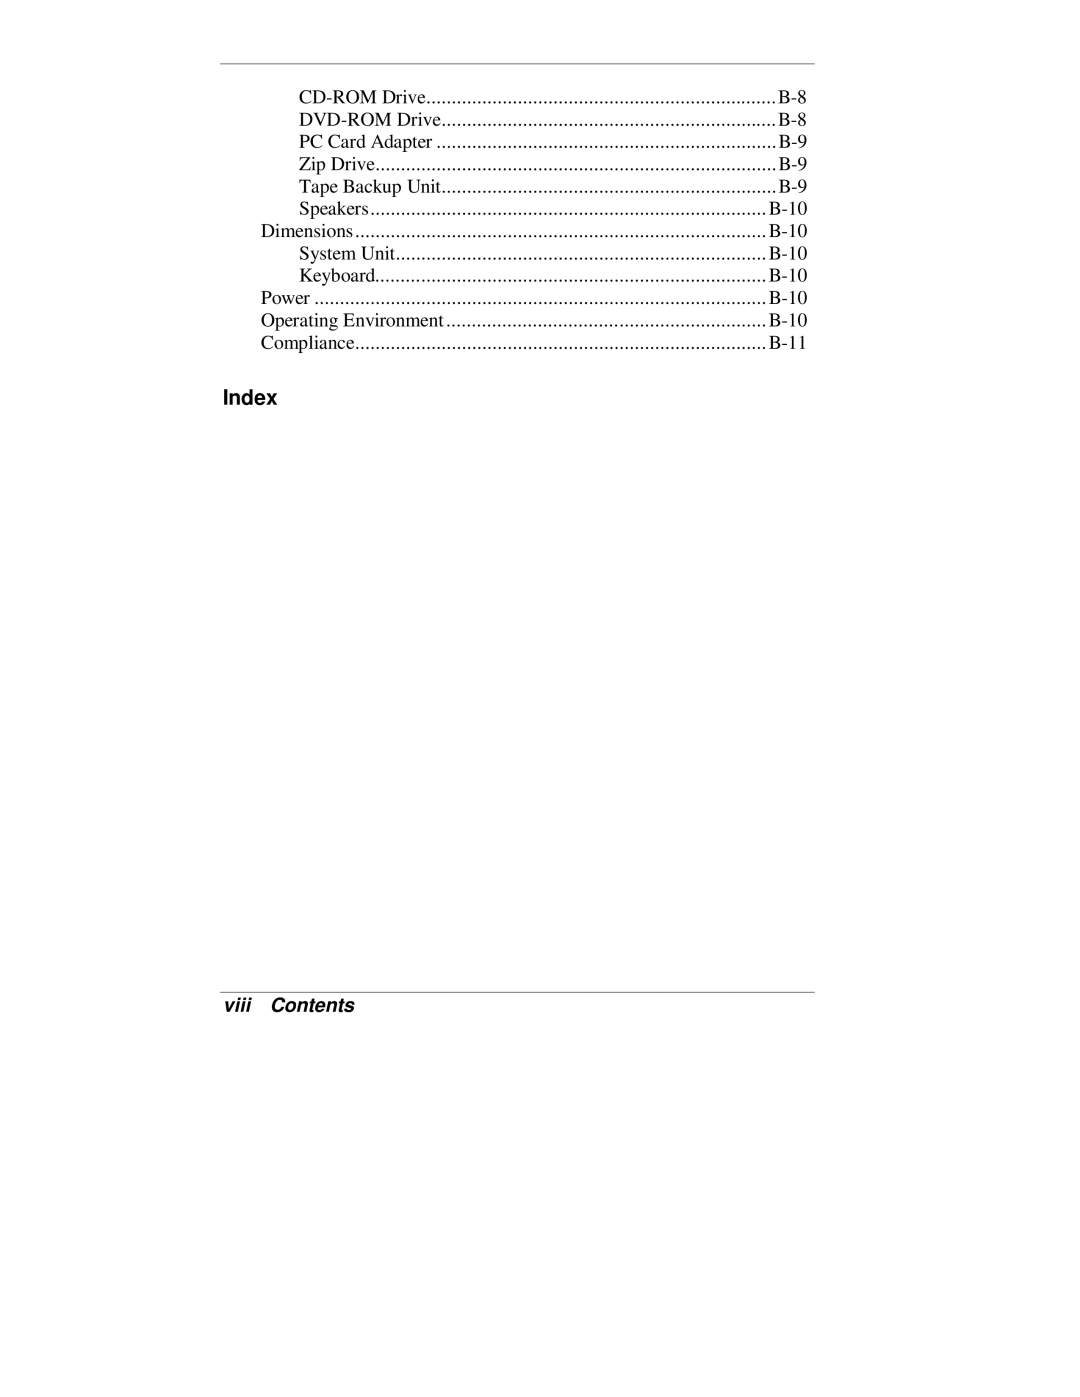 NEC VT 300 Series manual Index, viii Contents 